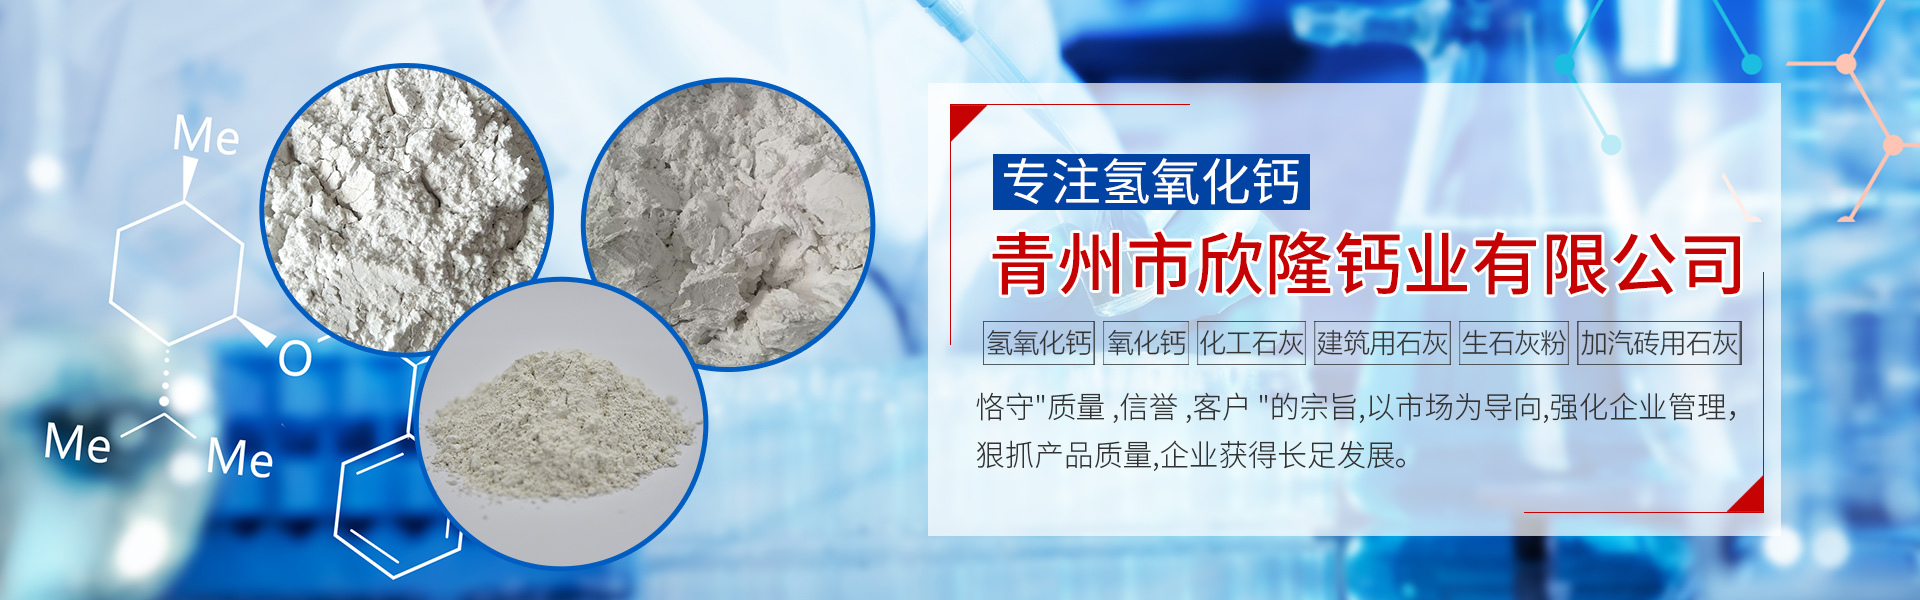 青州市欣隆钙业有限公司